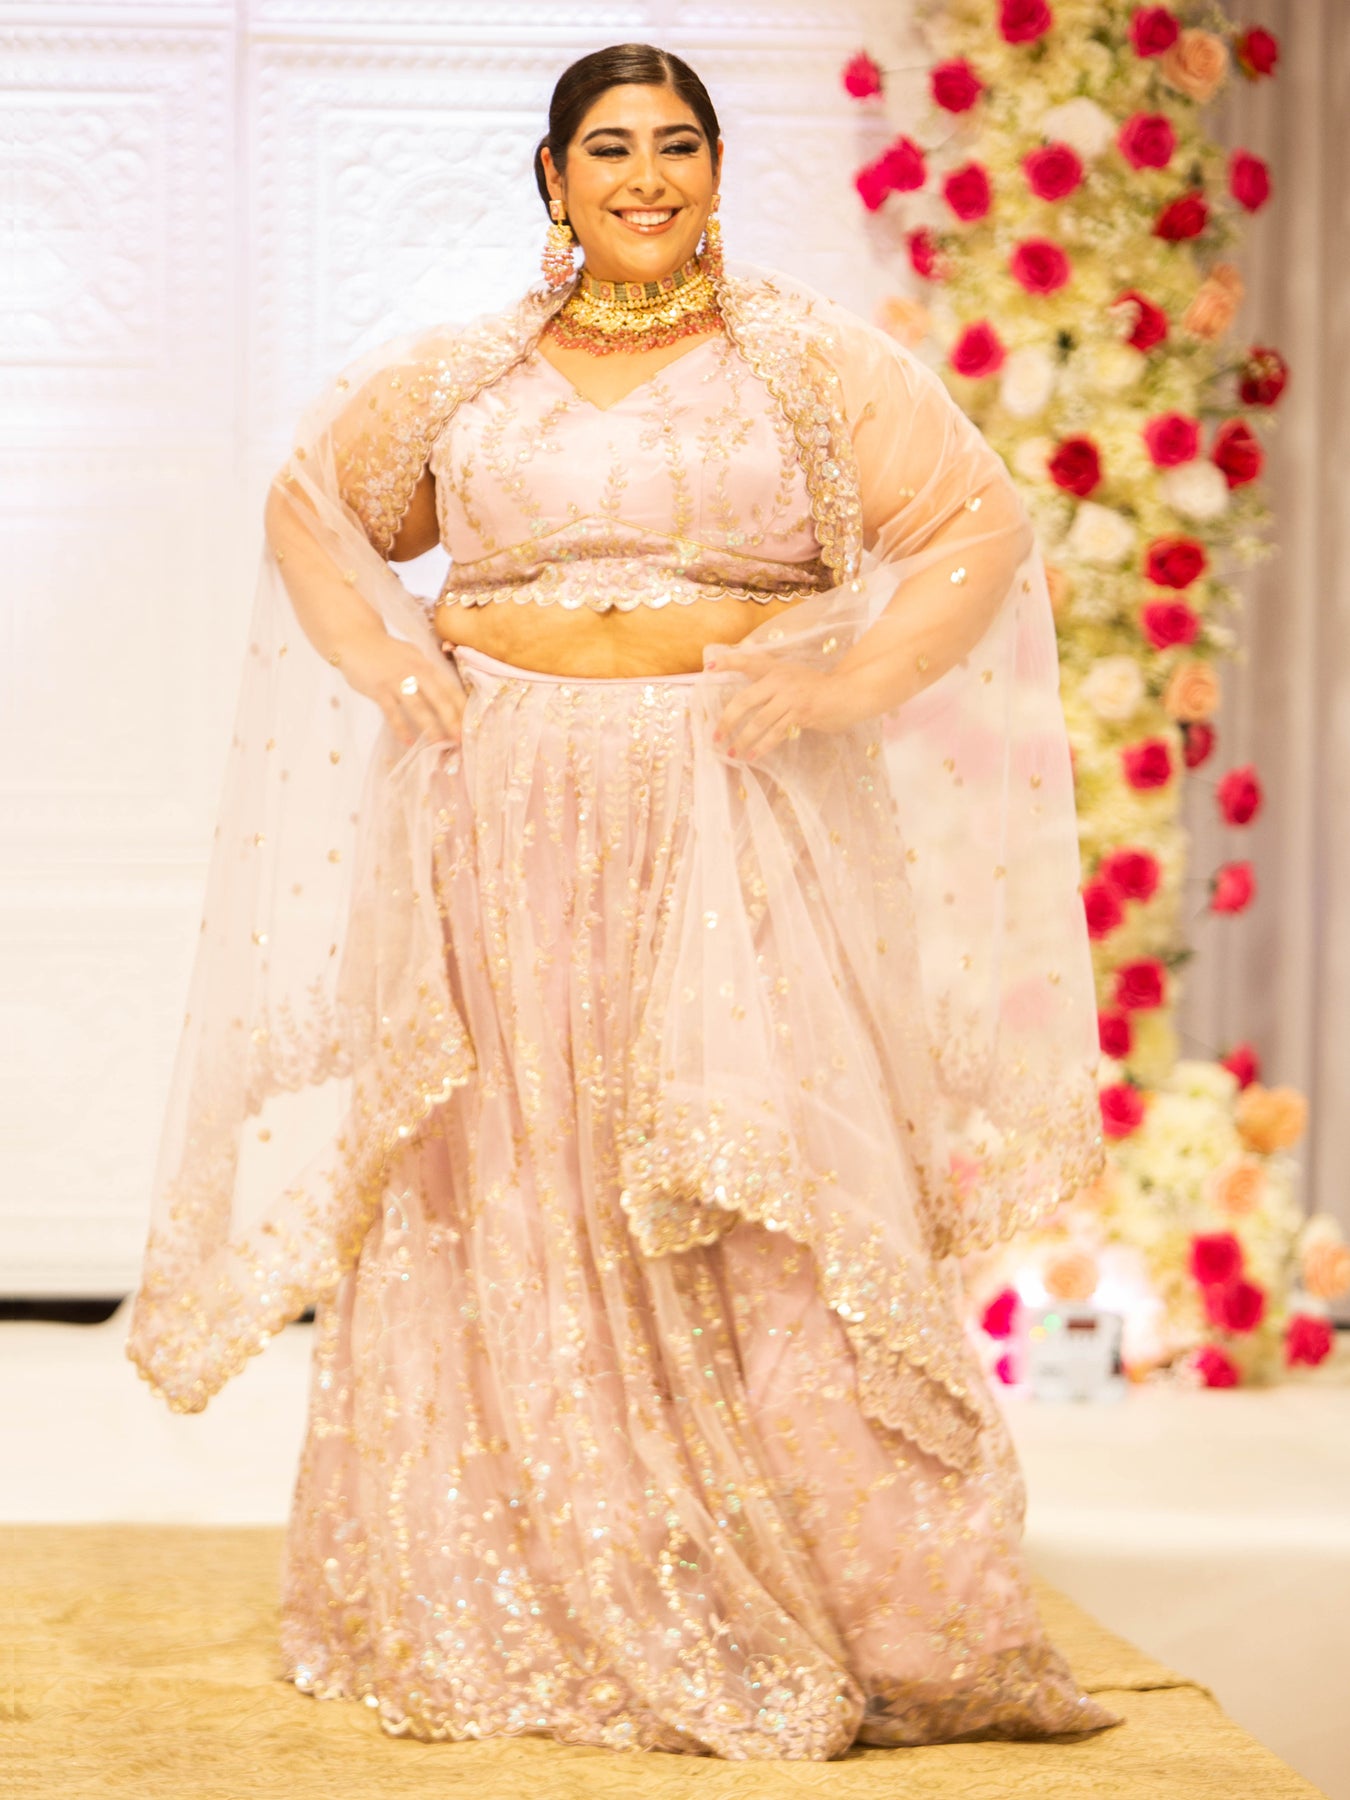 Big Fat Indian Weddings Saree for Women Sari Wedding Look Royal Saree for  Women Soft Lichi Silk Sari Beautiful Wedding Party Wear Saree - Etsy